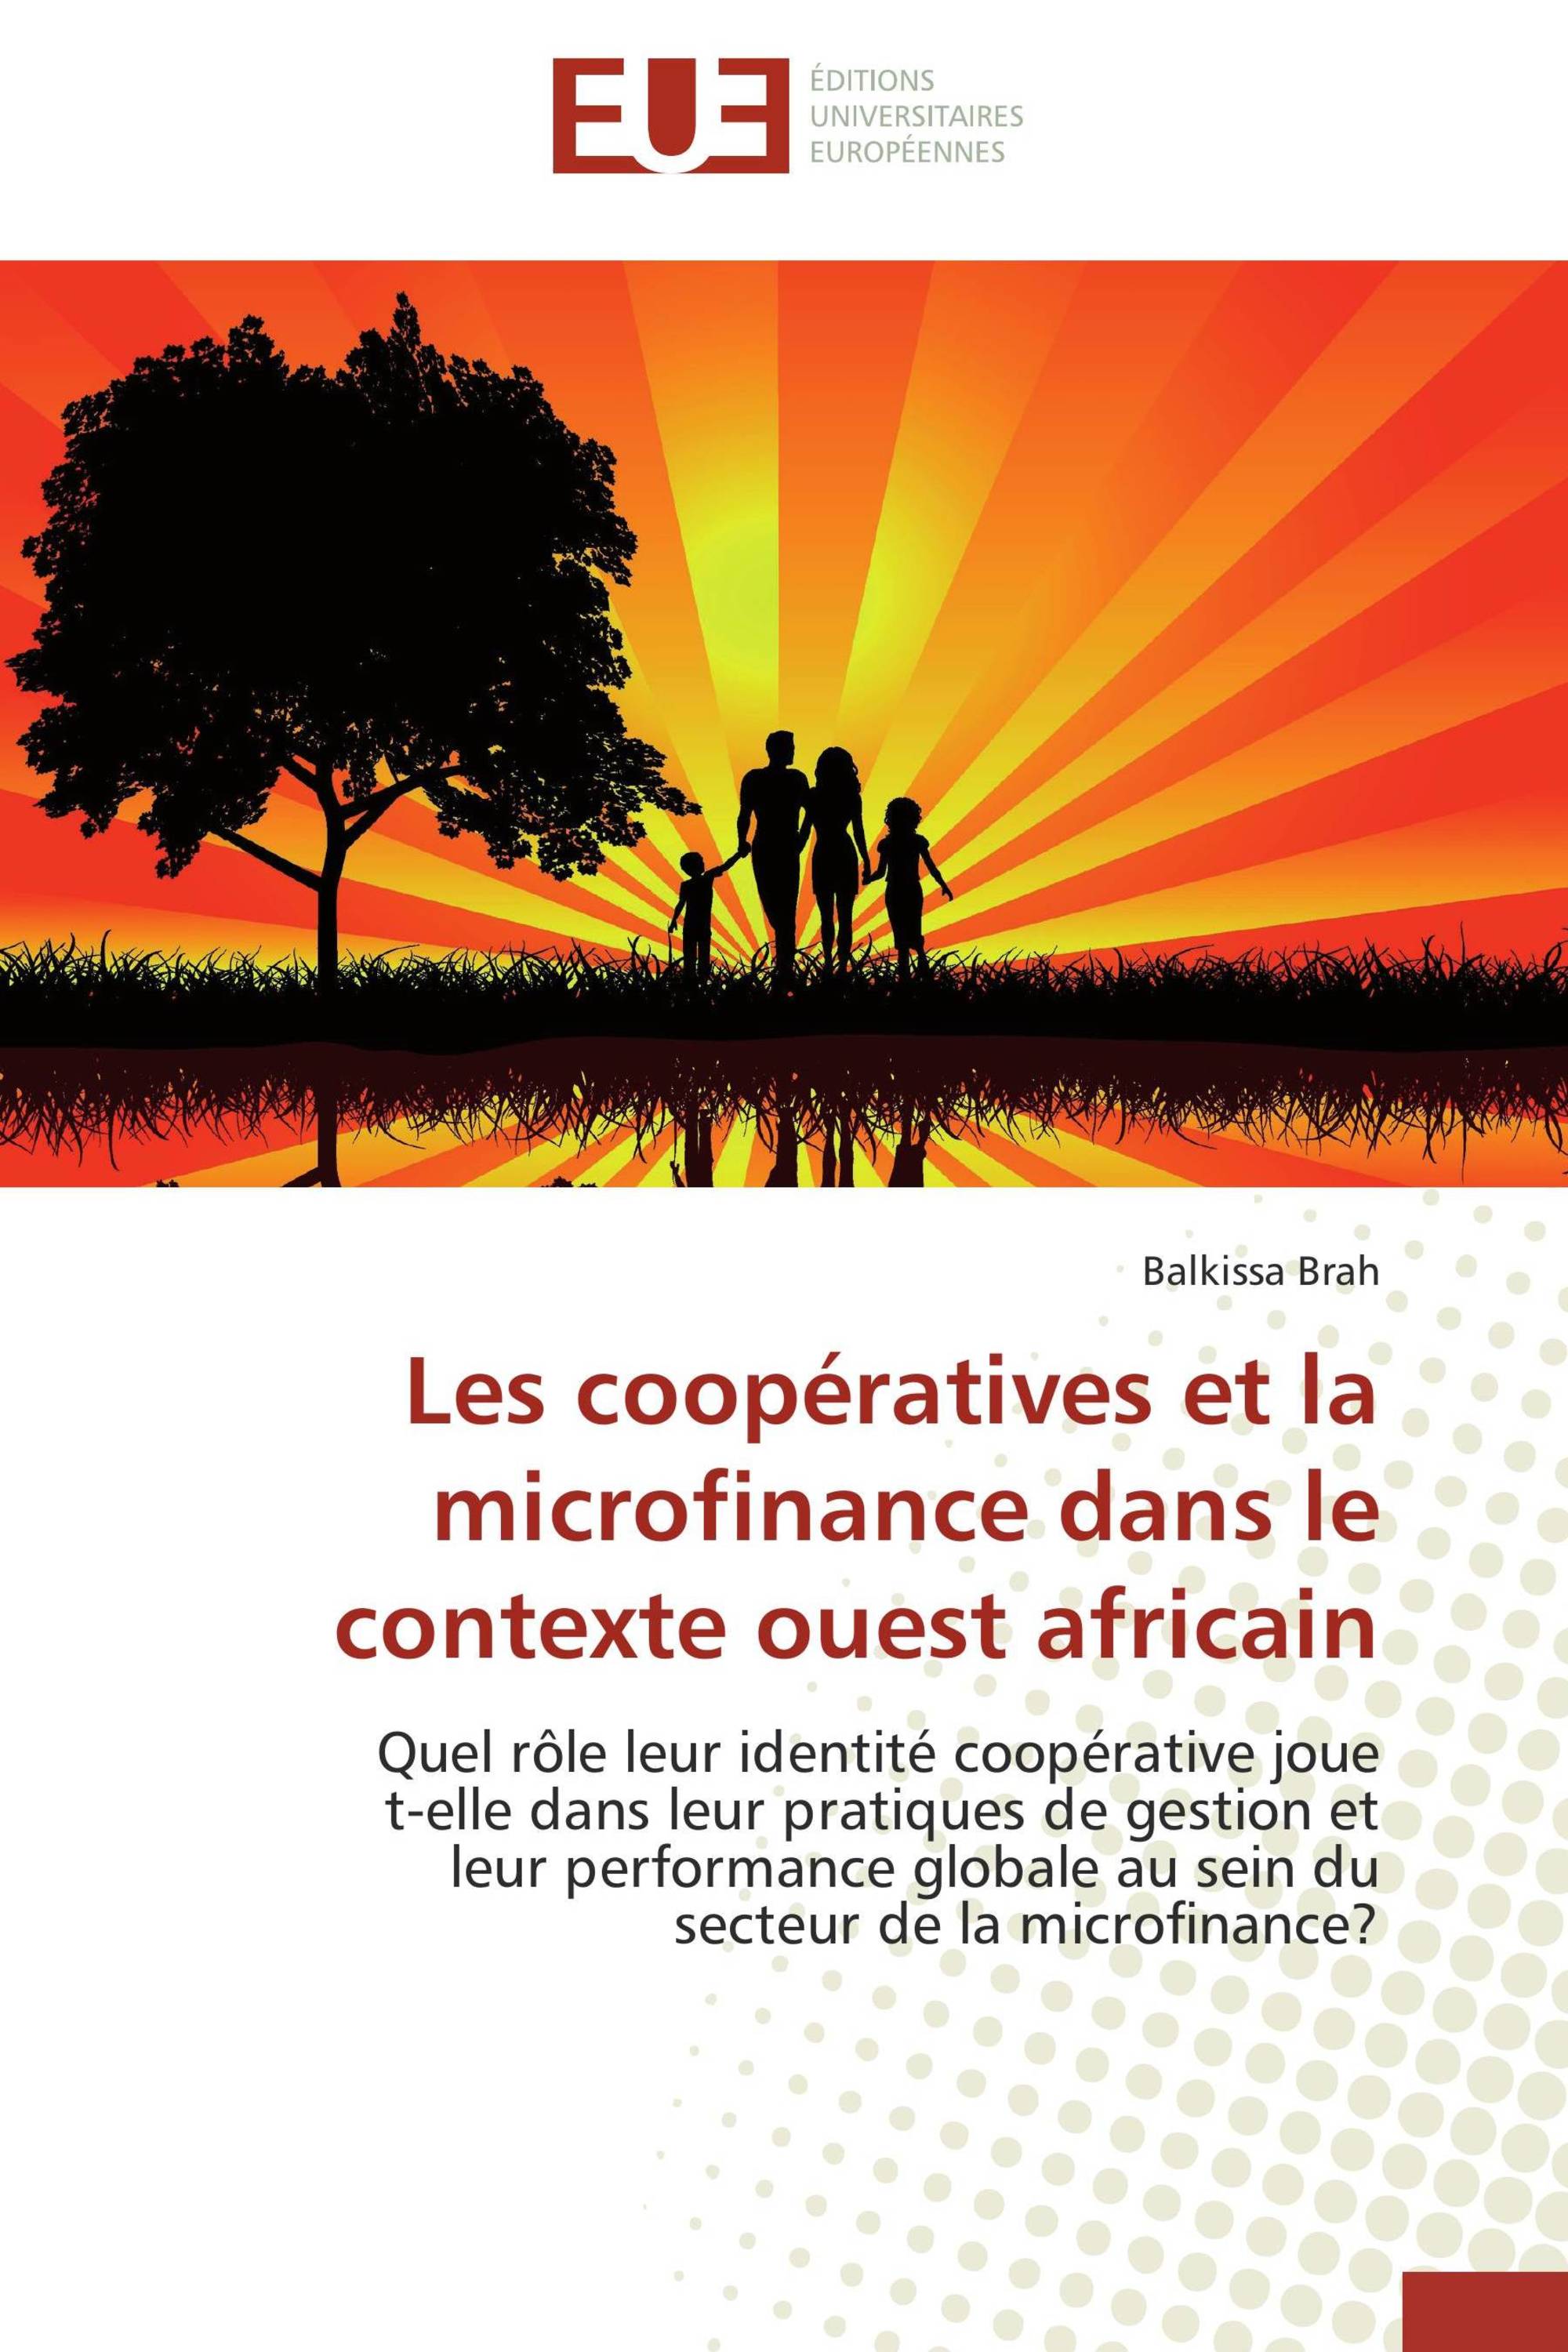 Les coopératives et la microfinance dans le contexte ouest africain